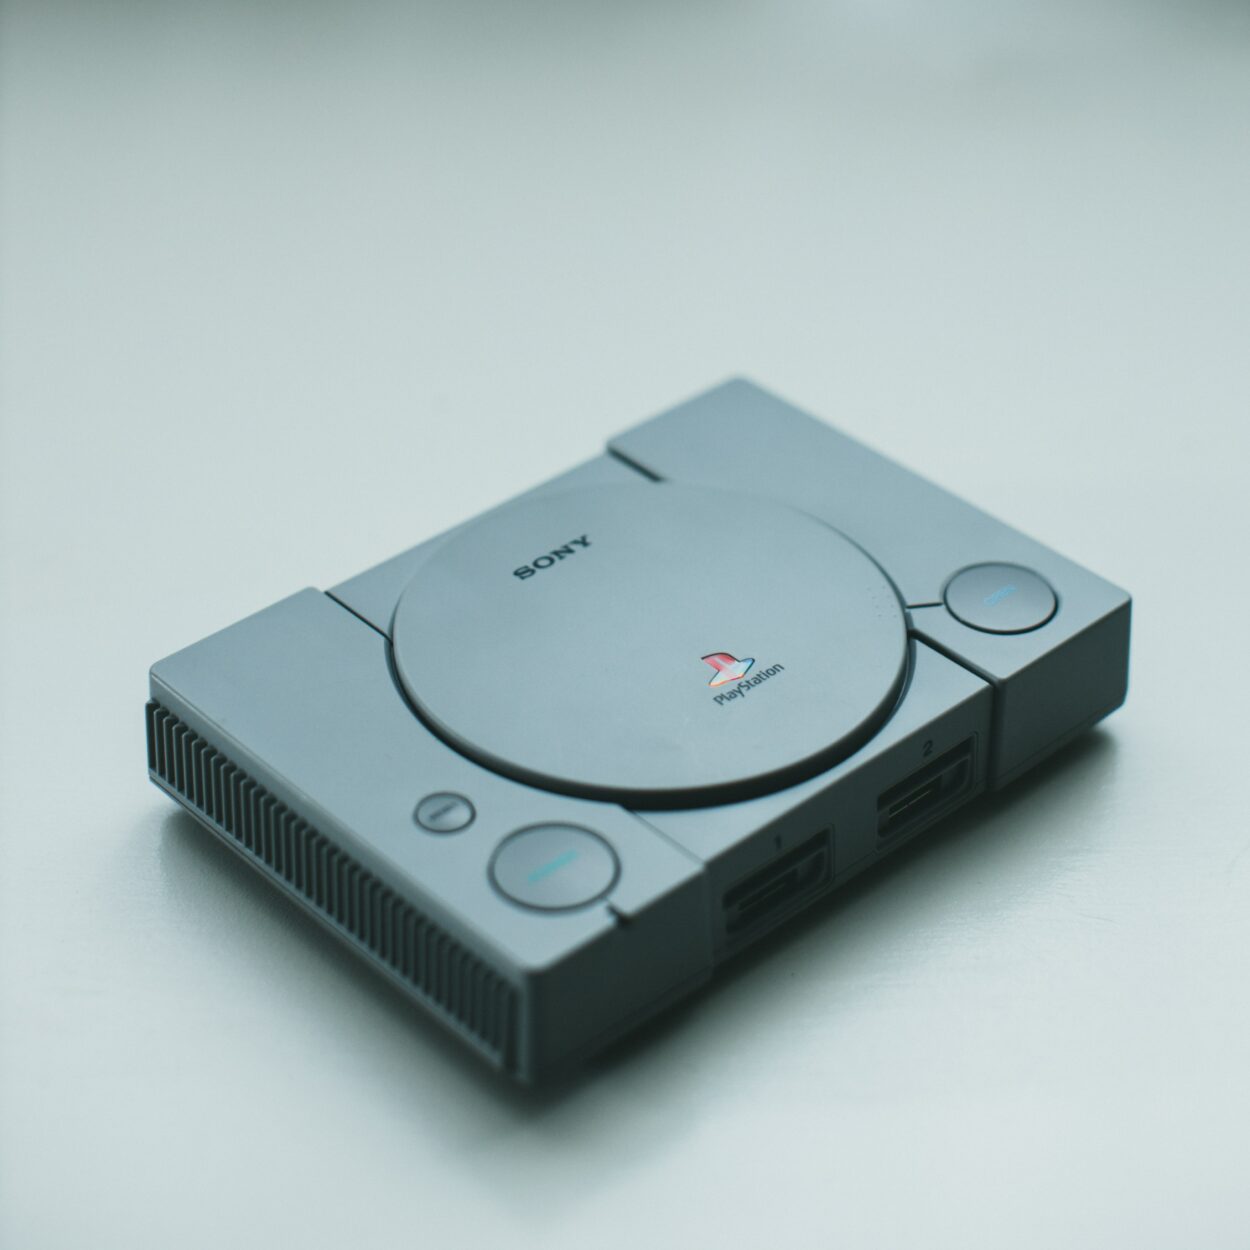 A grey Sony playstation